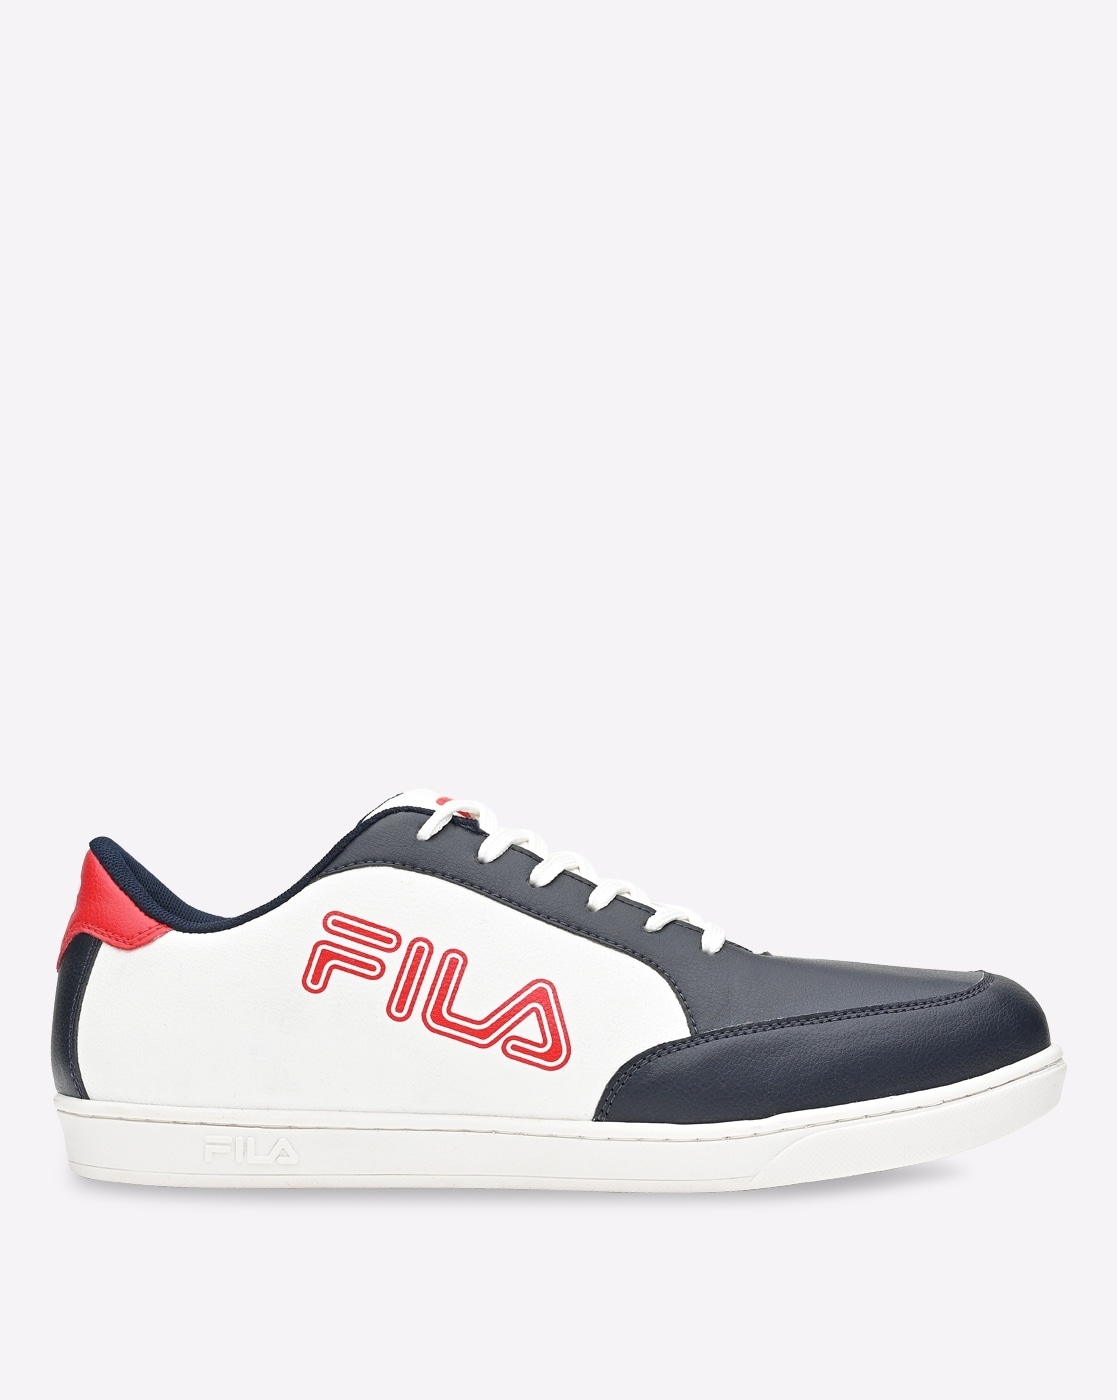 Black Casual Shoes for Men FILA Online | Ajio.com